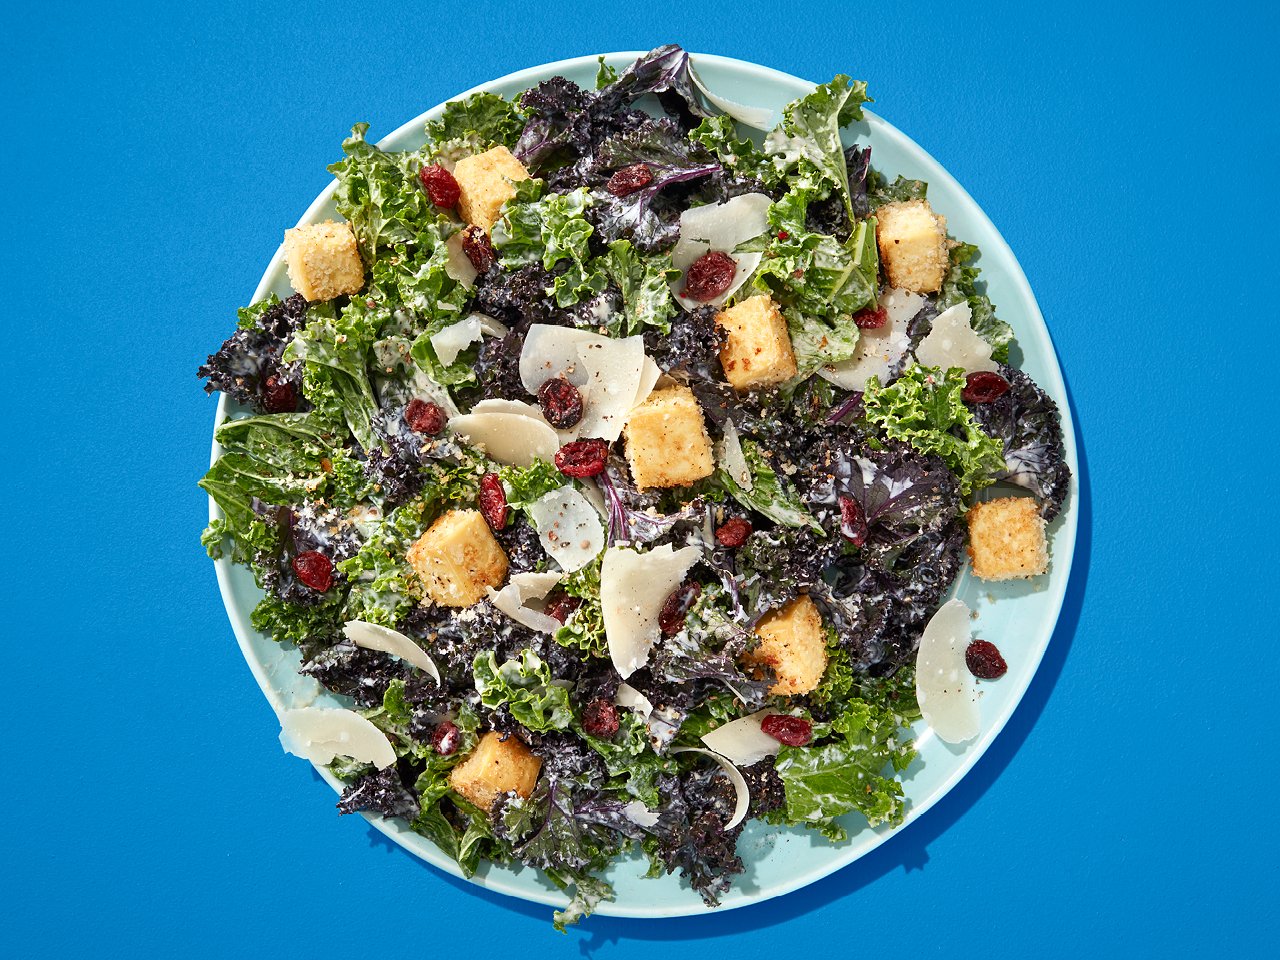 Kale Caesar Salad with Tofu Croutons